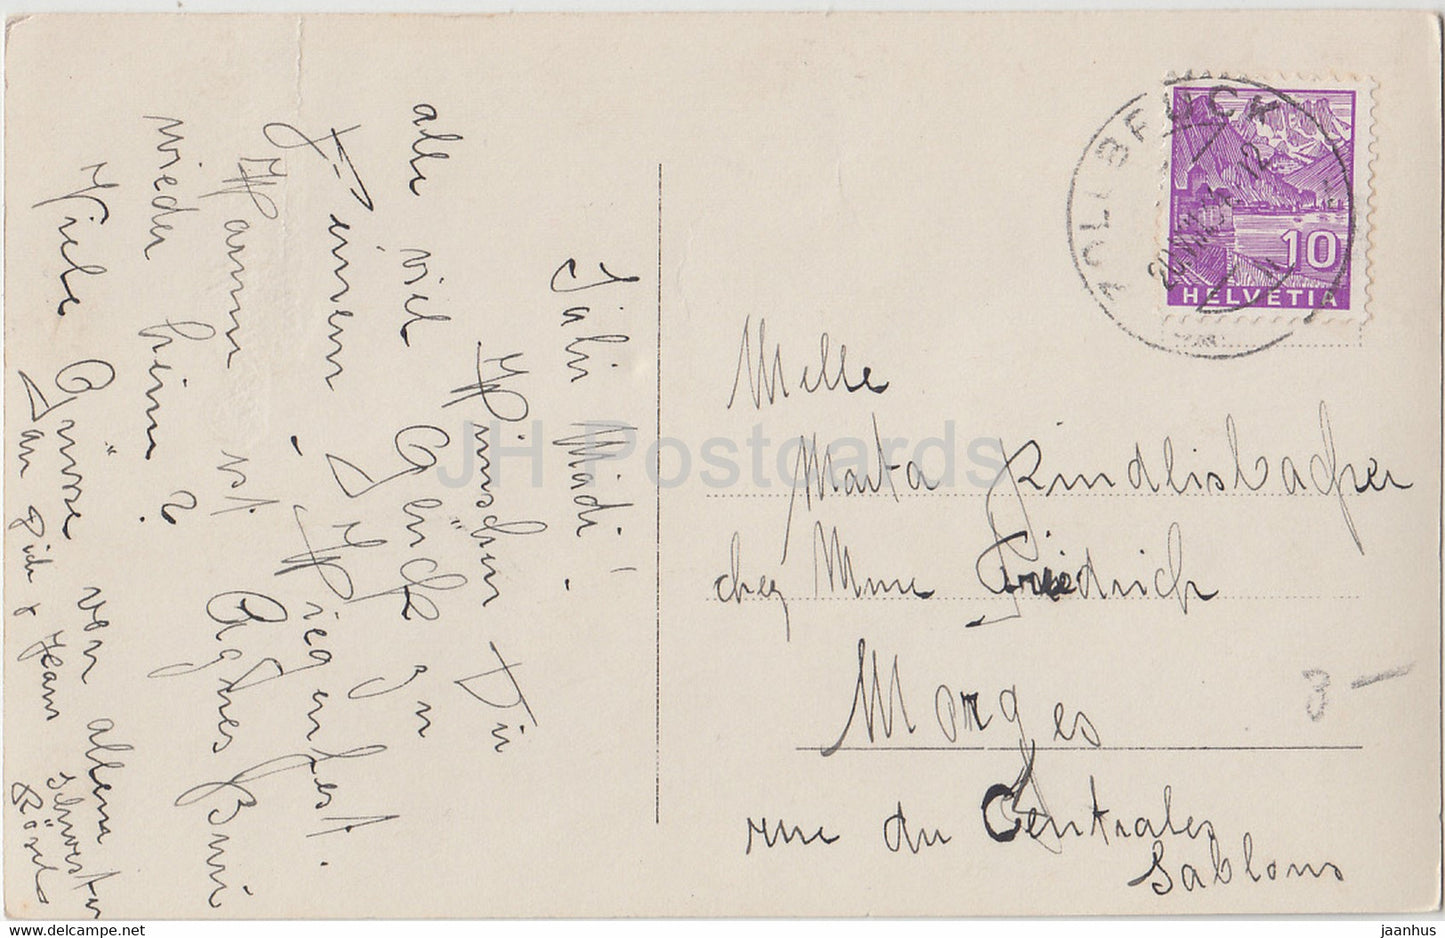 Birthday Greeting Card - Die besten Wunsche zum Geburtstage - boy - Lepo 3156/1 - old postcard - Germany - used